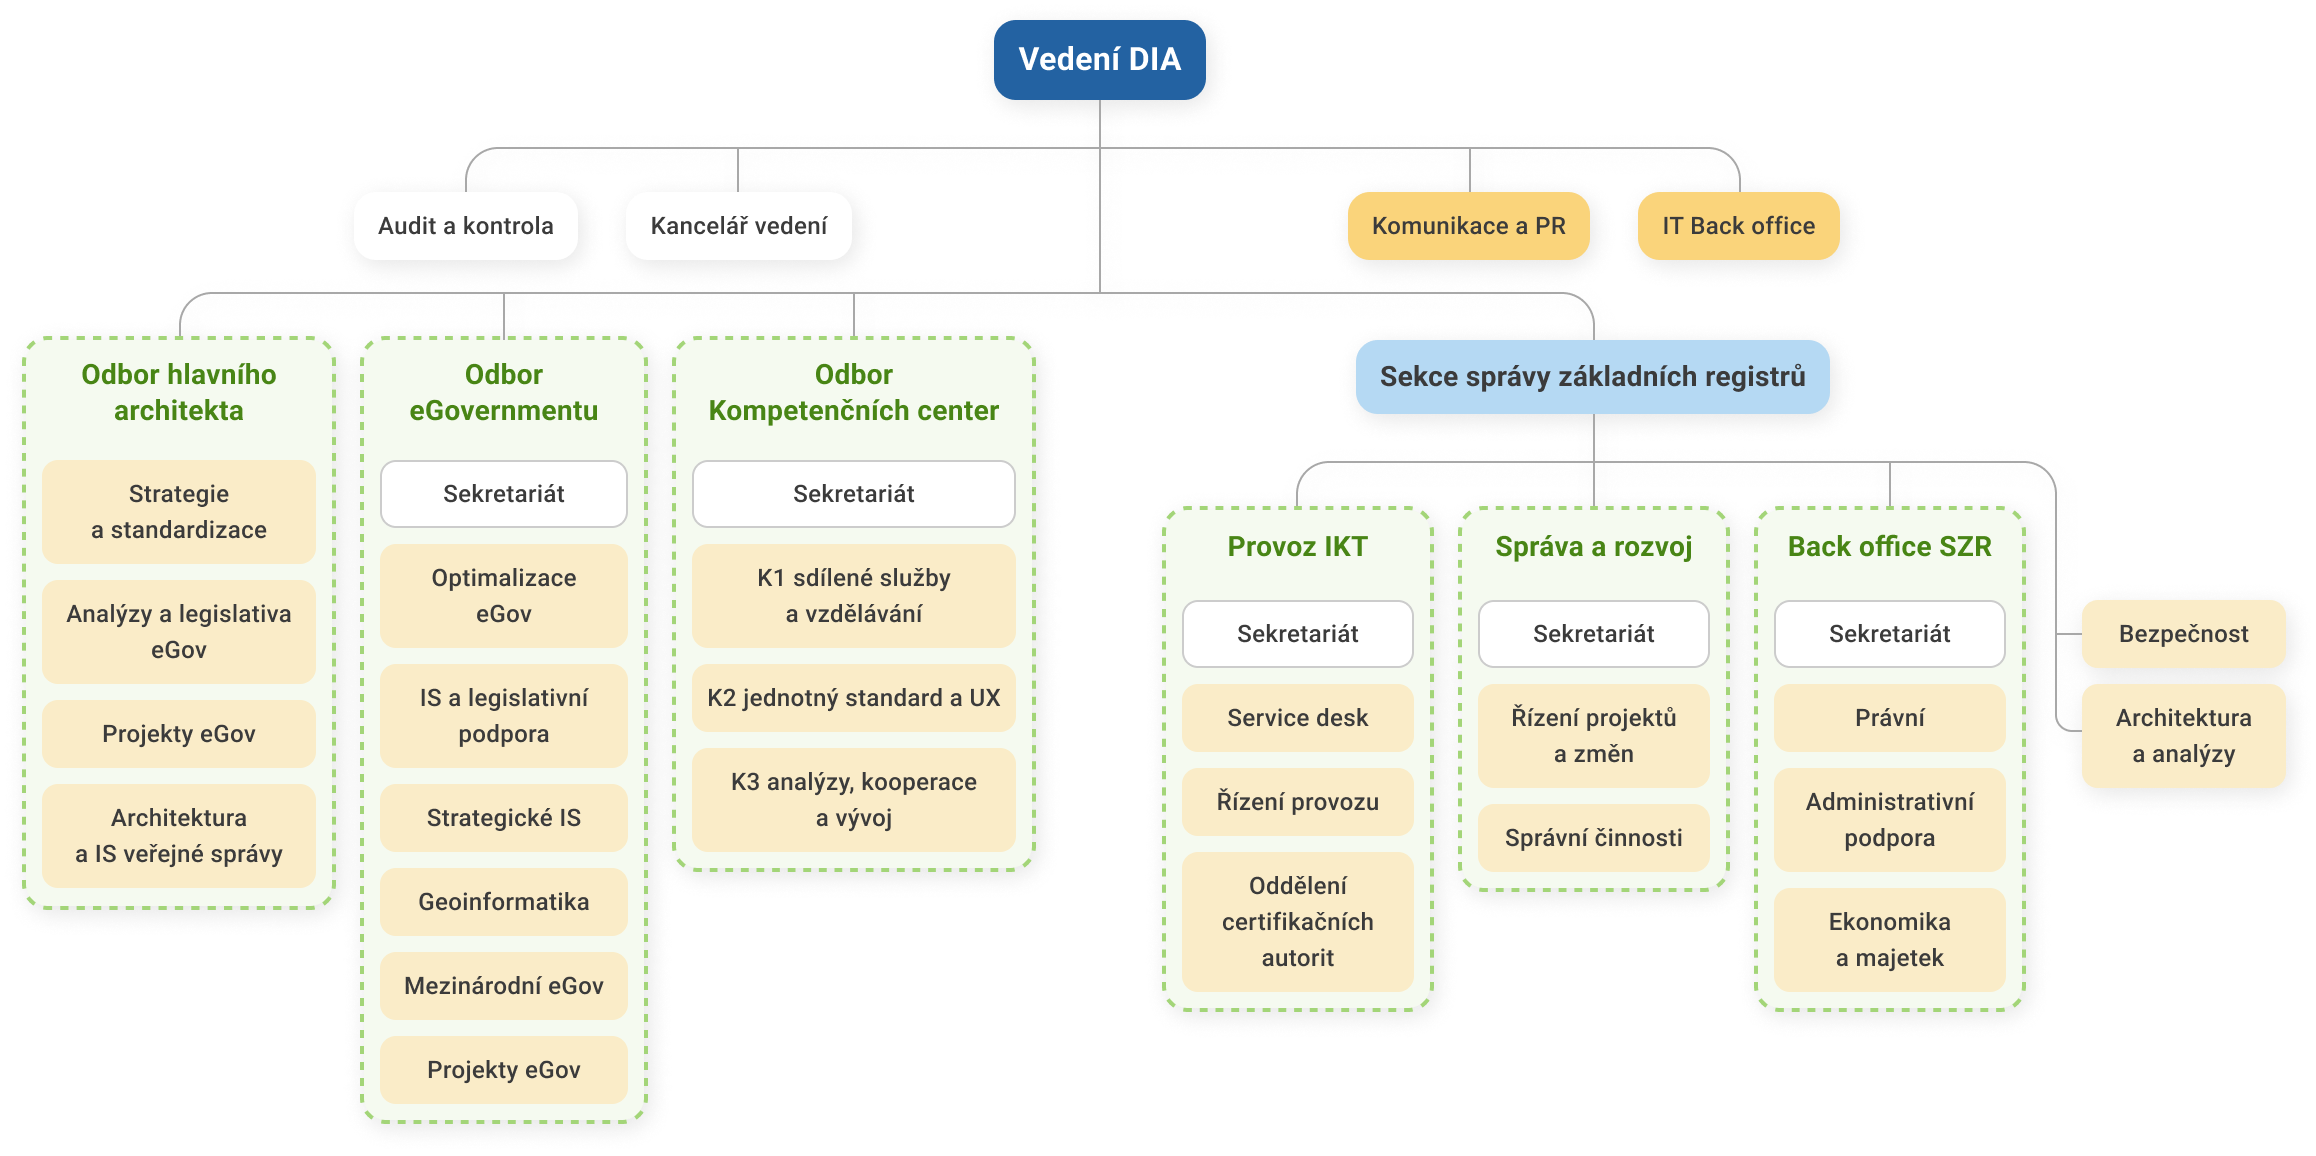 Organizační struktura DIA